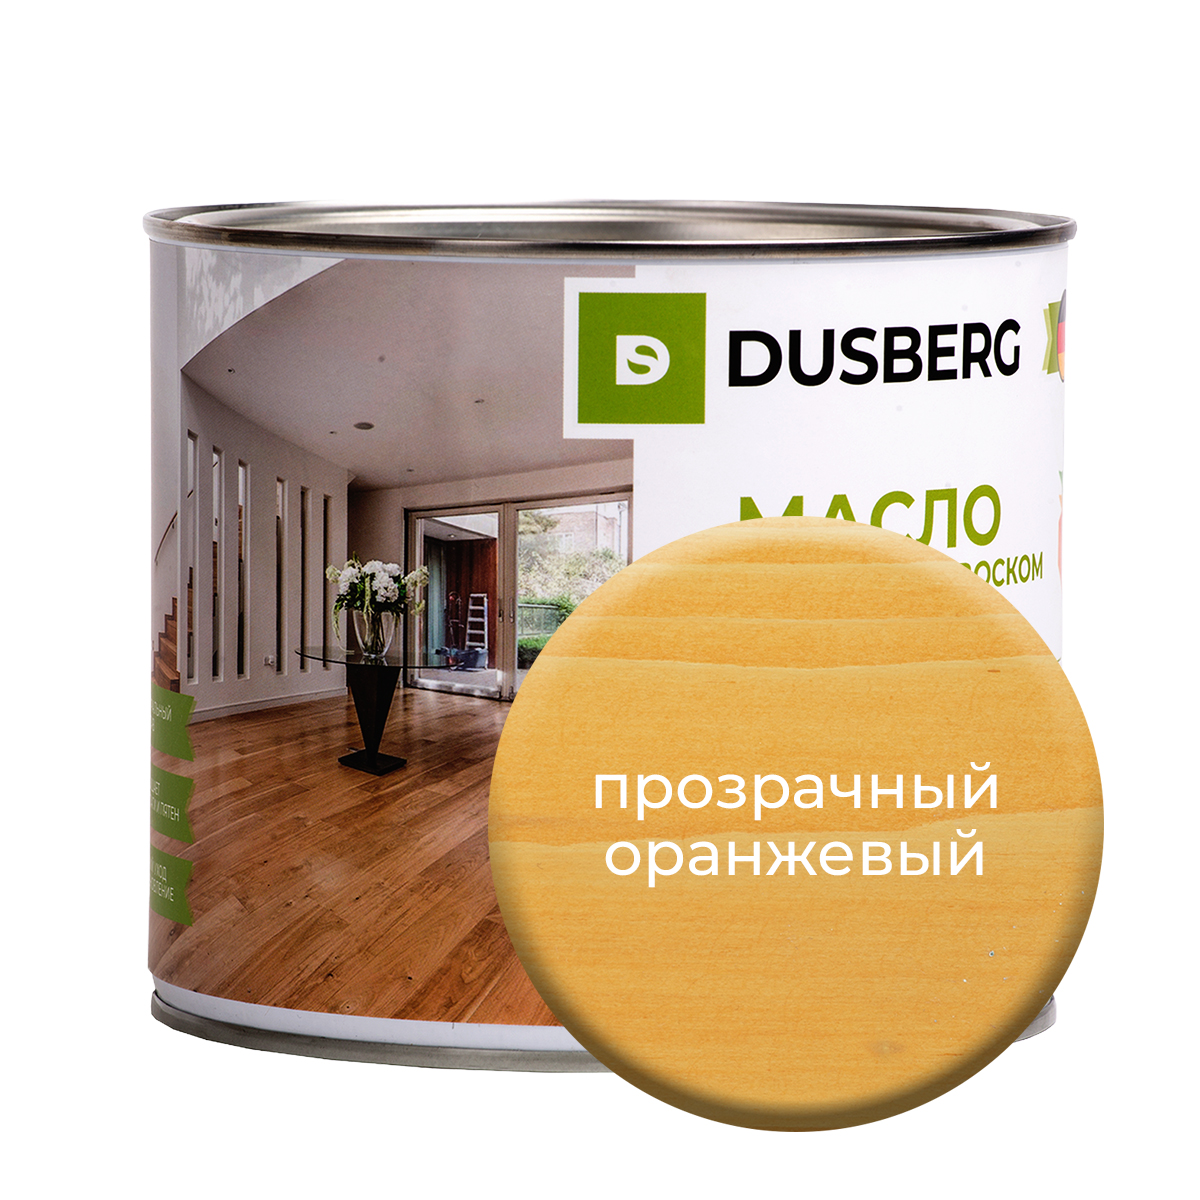 Масло Dusberg с твердым воском на бесцветной основе, 2 л Прозрачный оранжевый масло воск для террасной доски brite